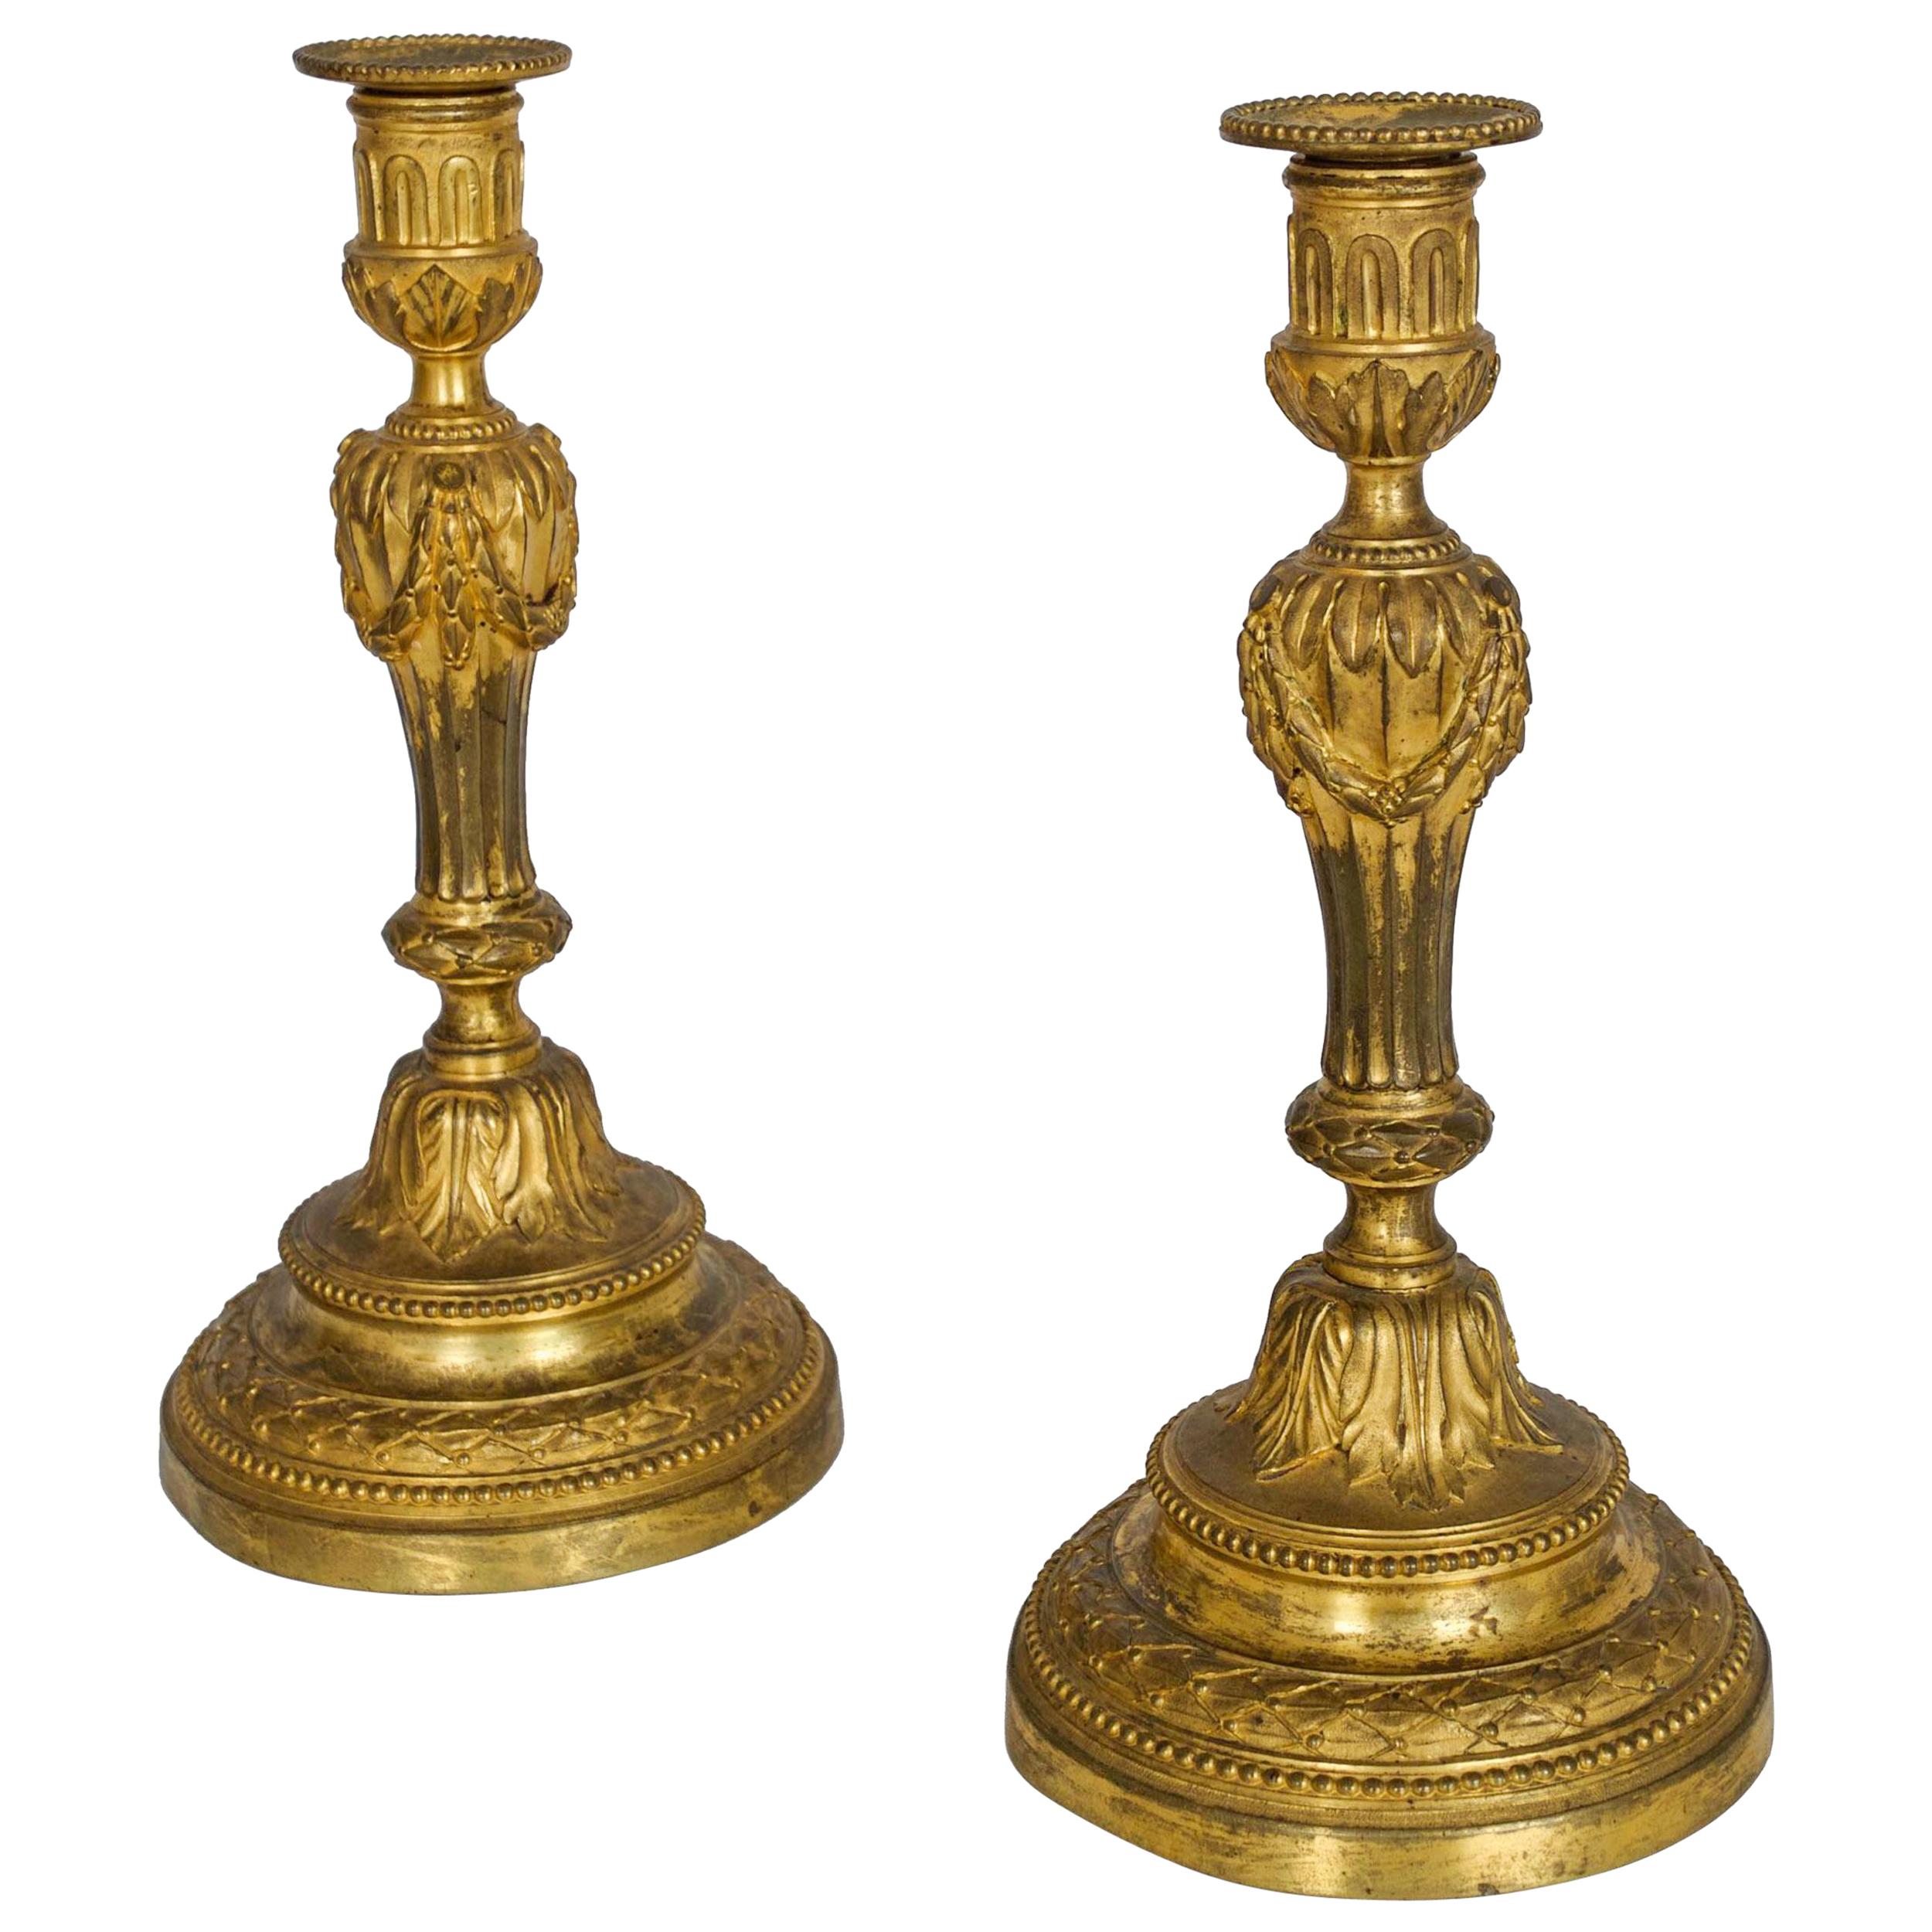 Rare paire de chandeliers en bronze doré d'époque Louis XVI, France, vers 1770